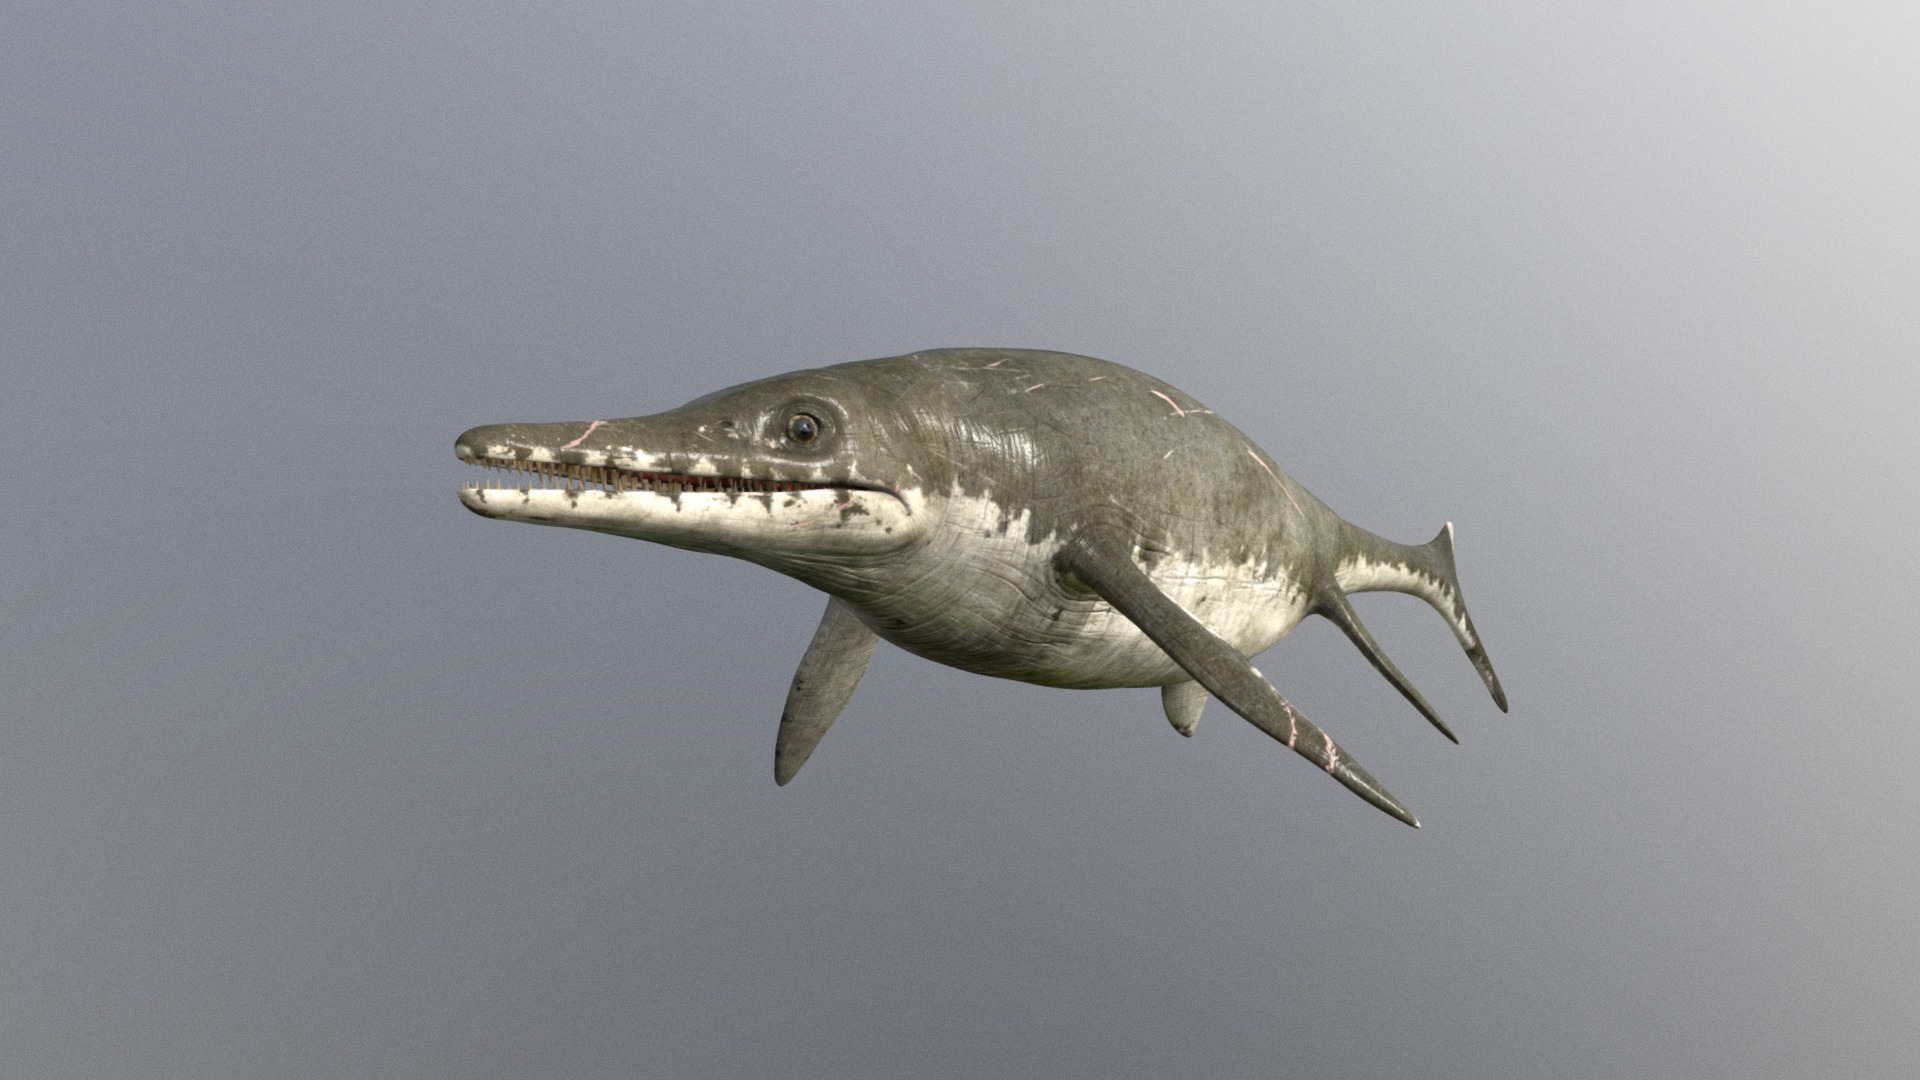 hello here a old  ichthyosaur model

Instagram https://www.instagram.com/julian_johnson1234/ - ichthyosaurus - Download Free 3D model by Julian Johnson-Mortimer (@FreddyFoxFreddy) 3d model